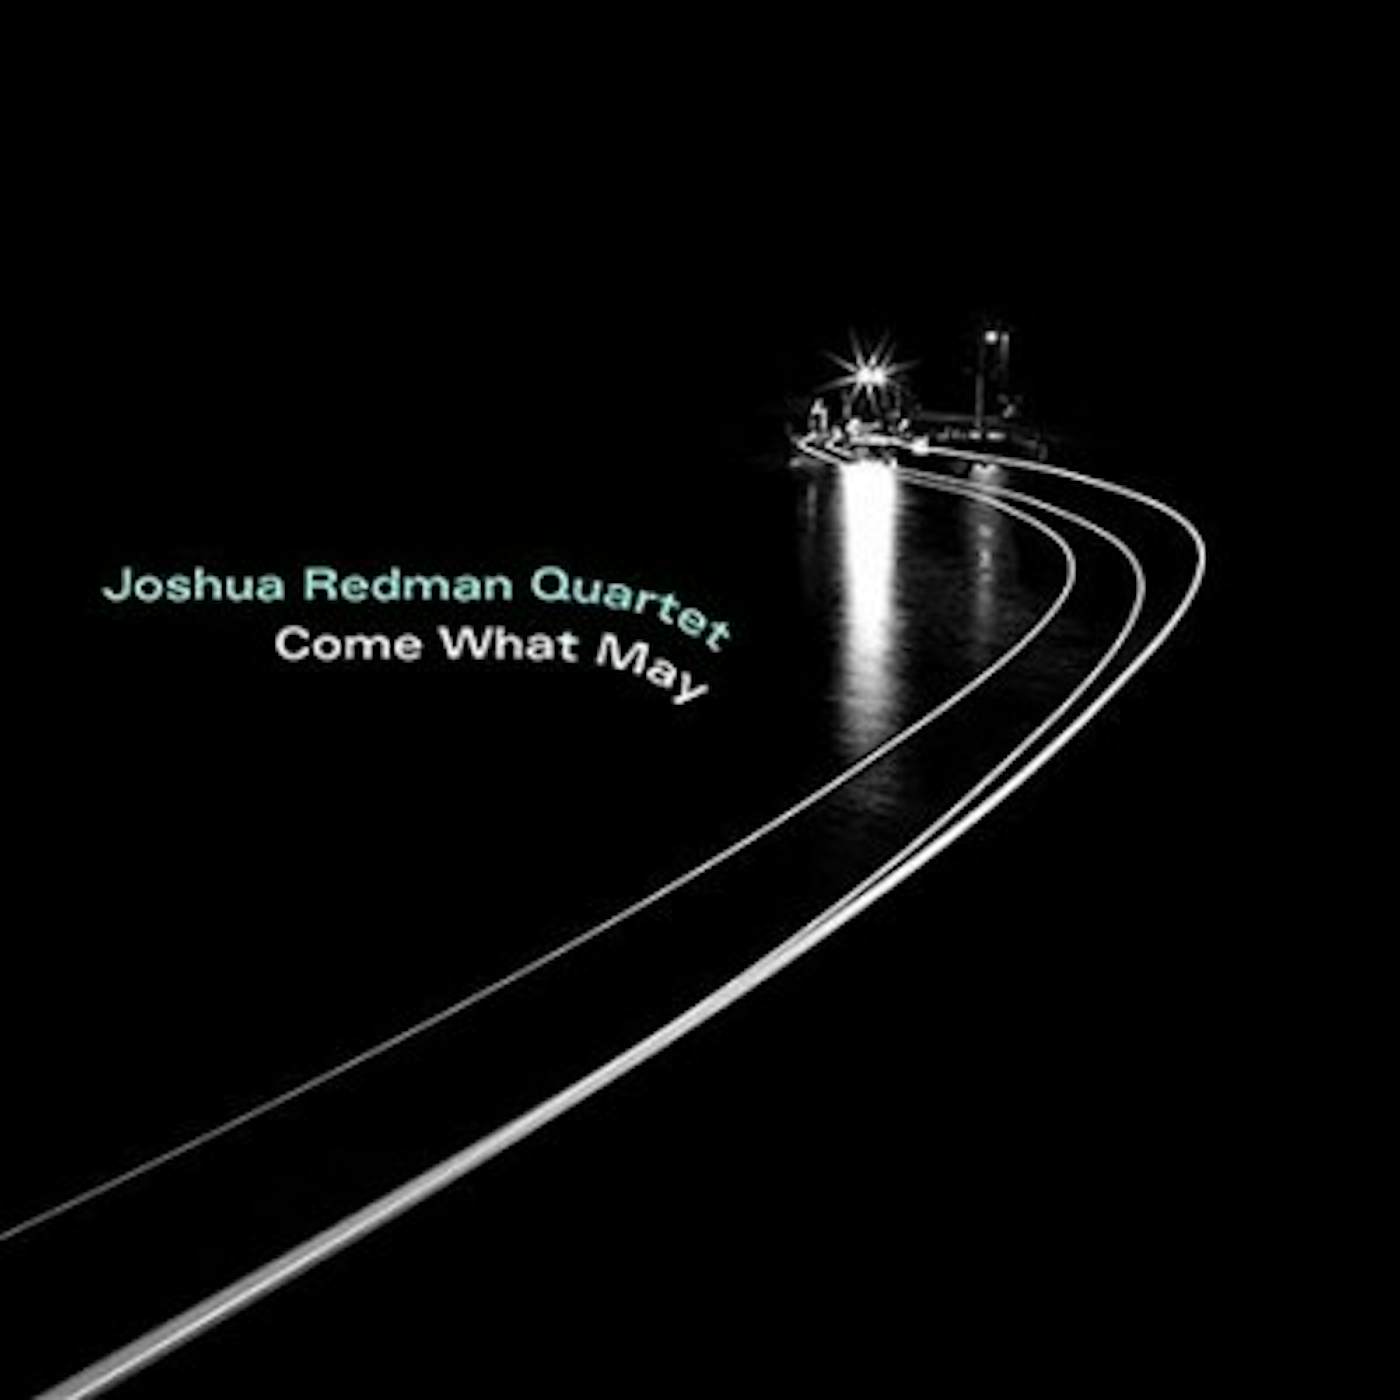 Joshua Redman Quartet Come What May Vinyl Record